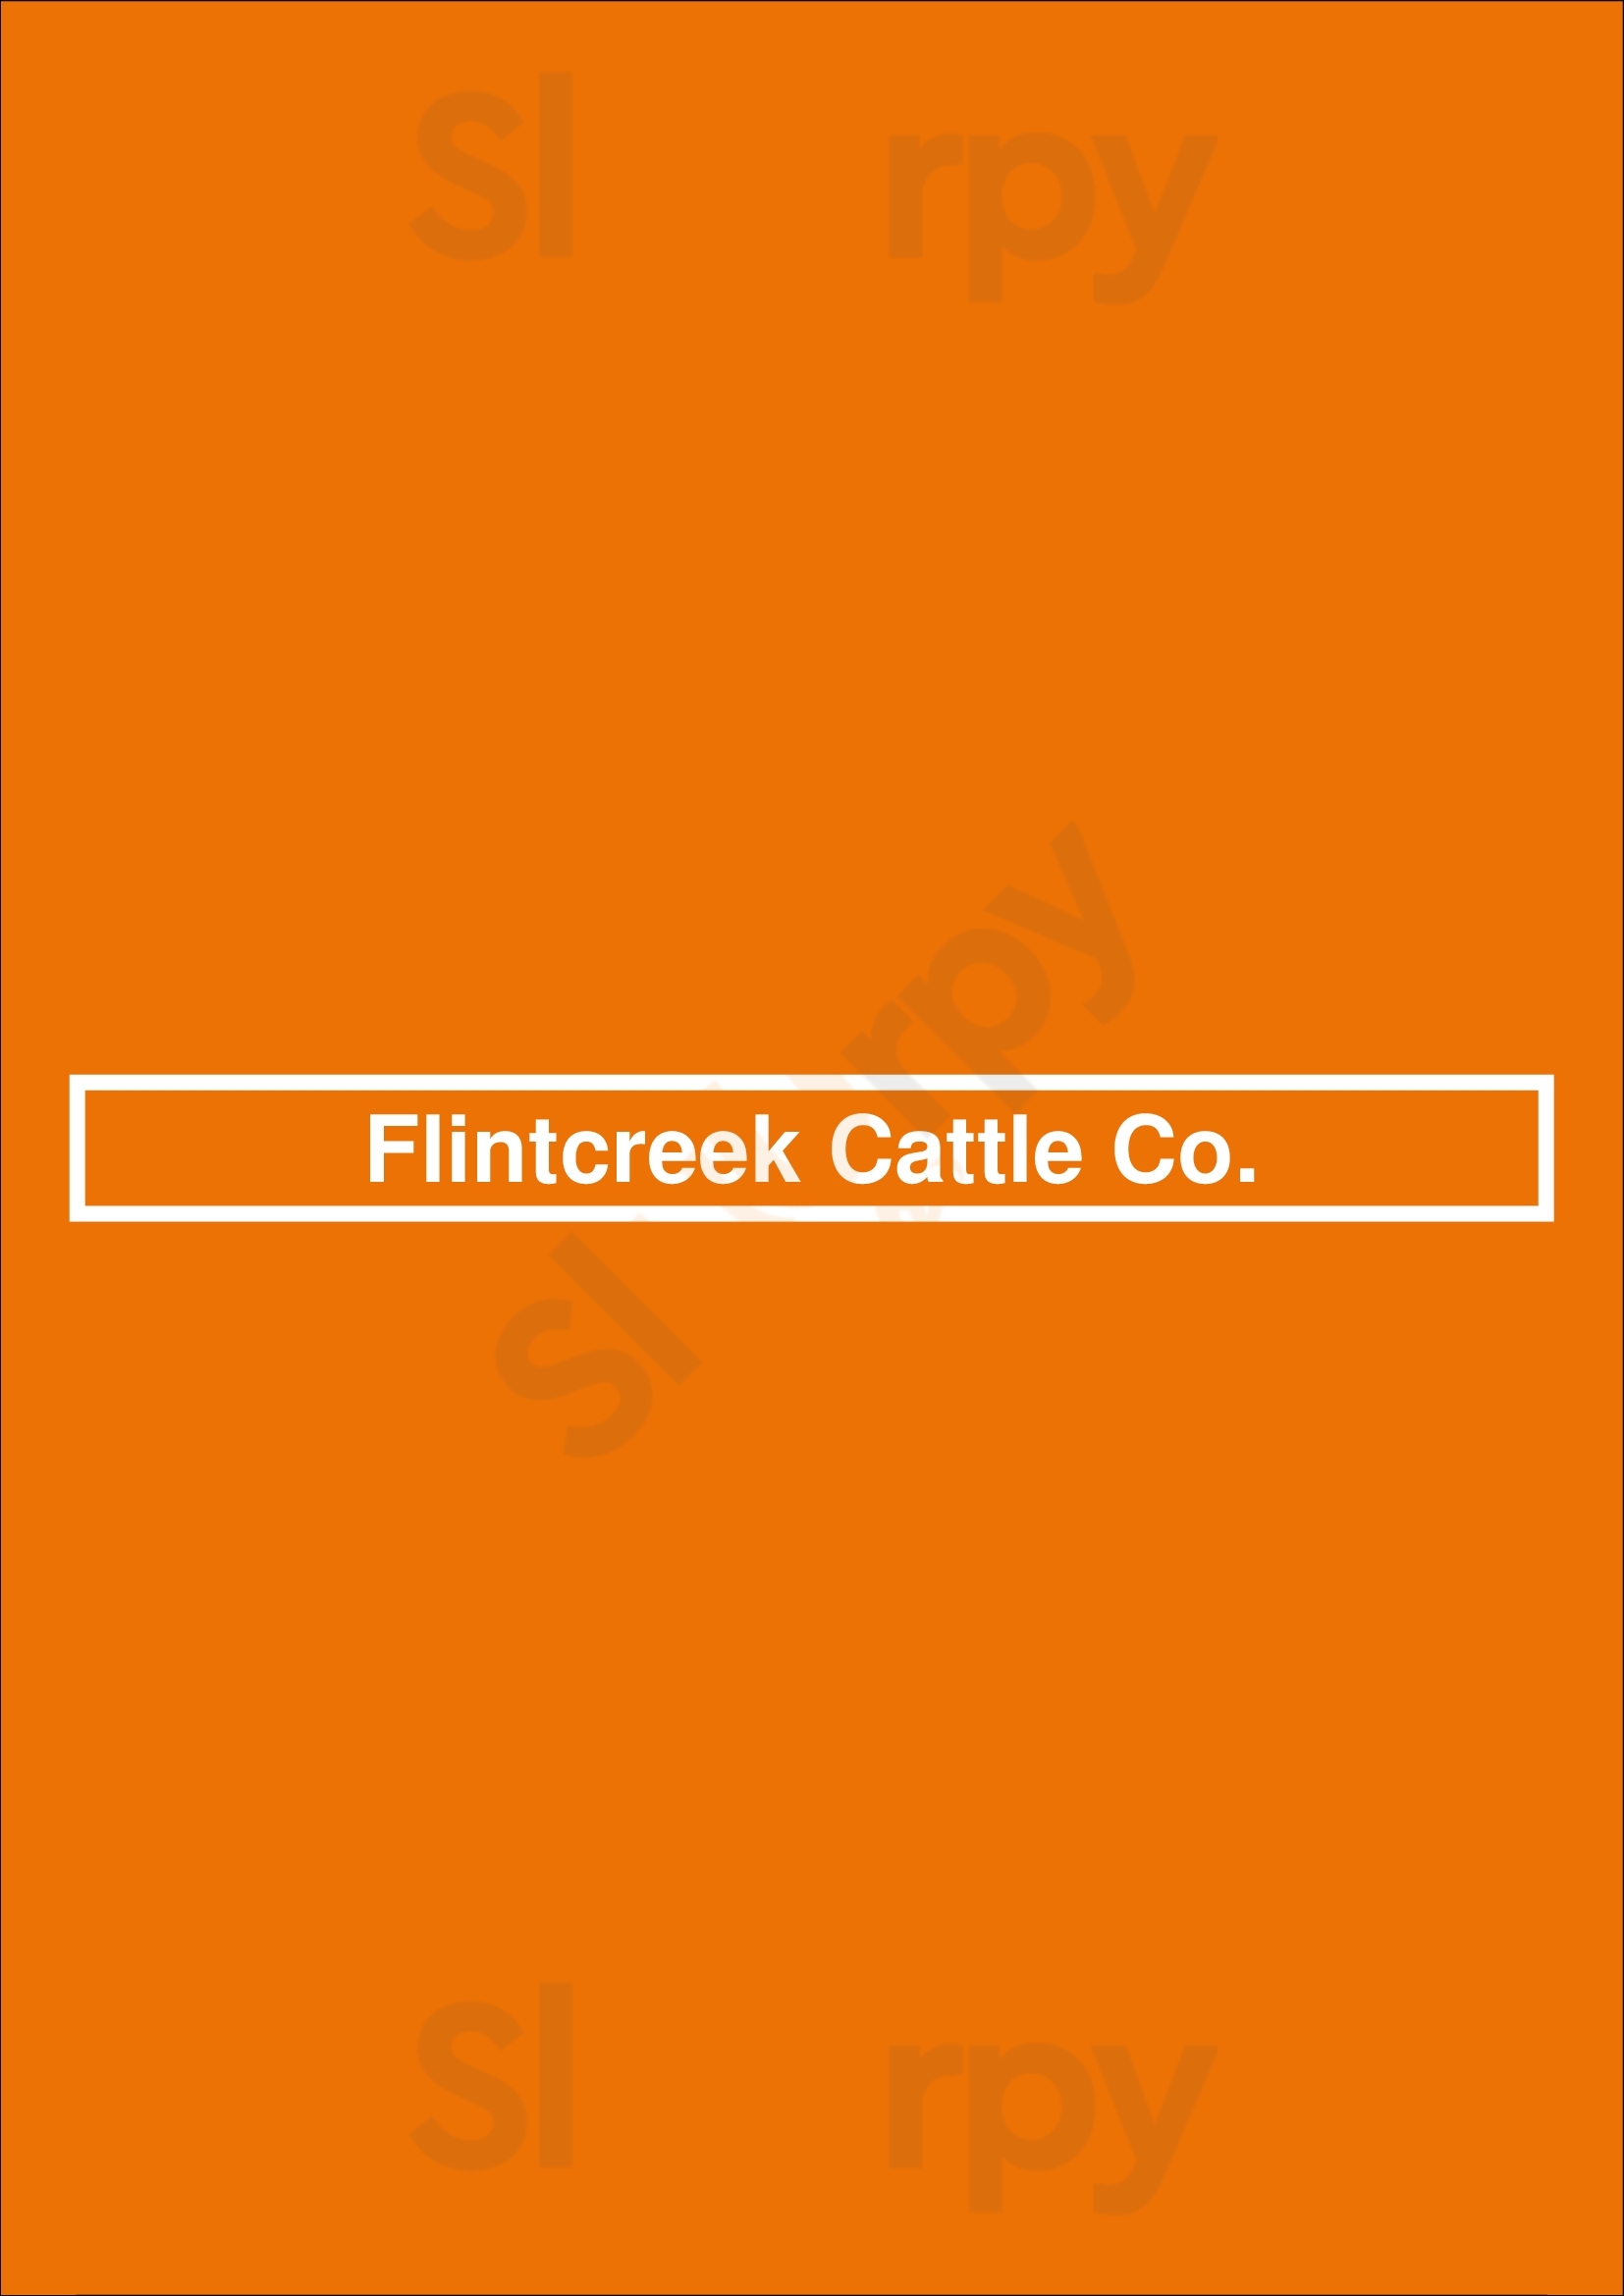 Flintcreek Cattle Co. Seattle Menu - 1